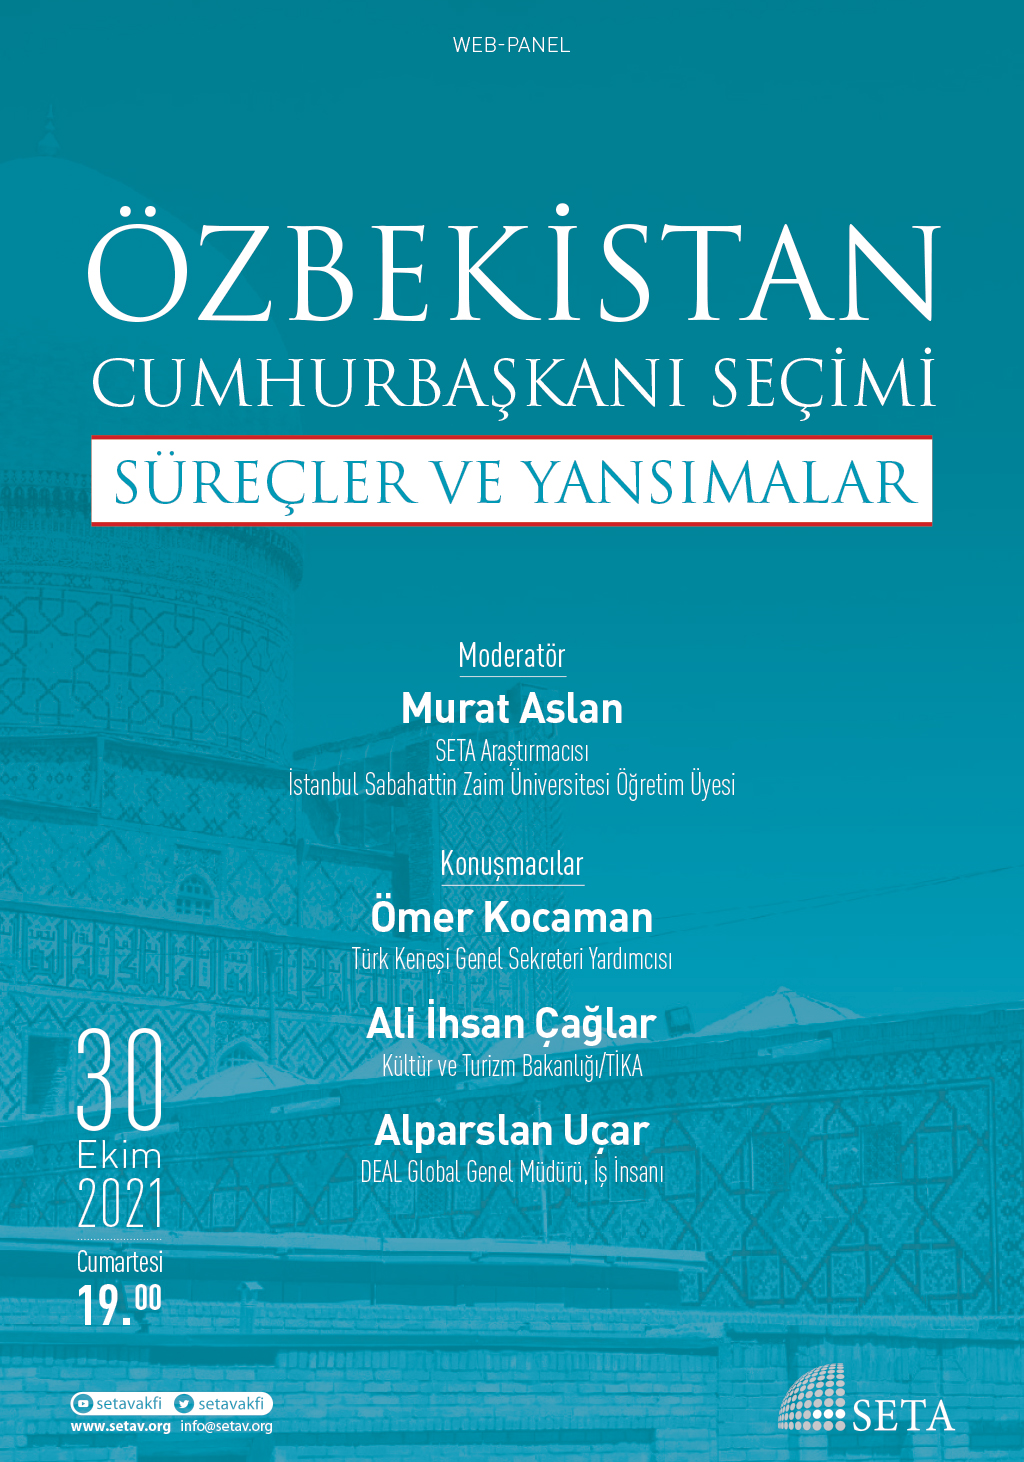 Web Panel Özbekistan Cumhurbaşkanı Seçimi Süreçler ve Yansımalar